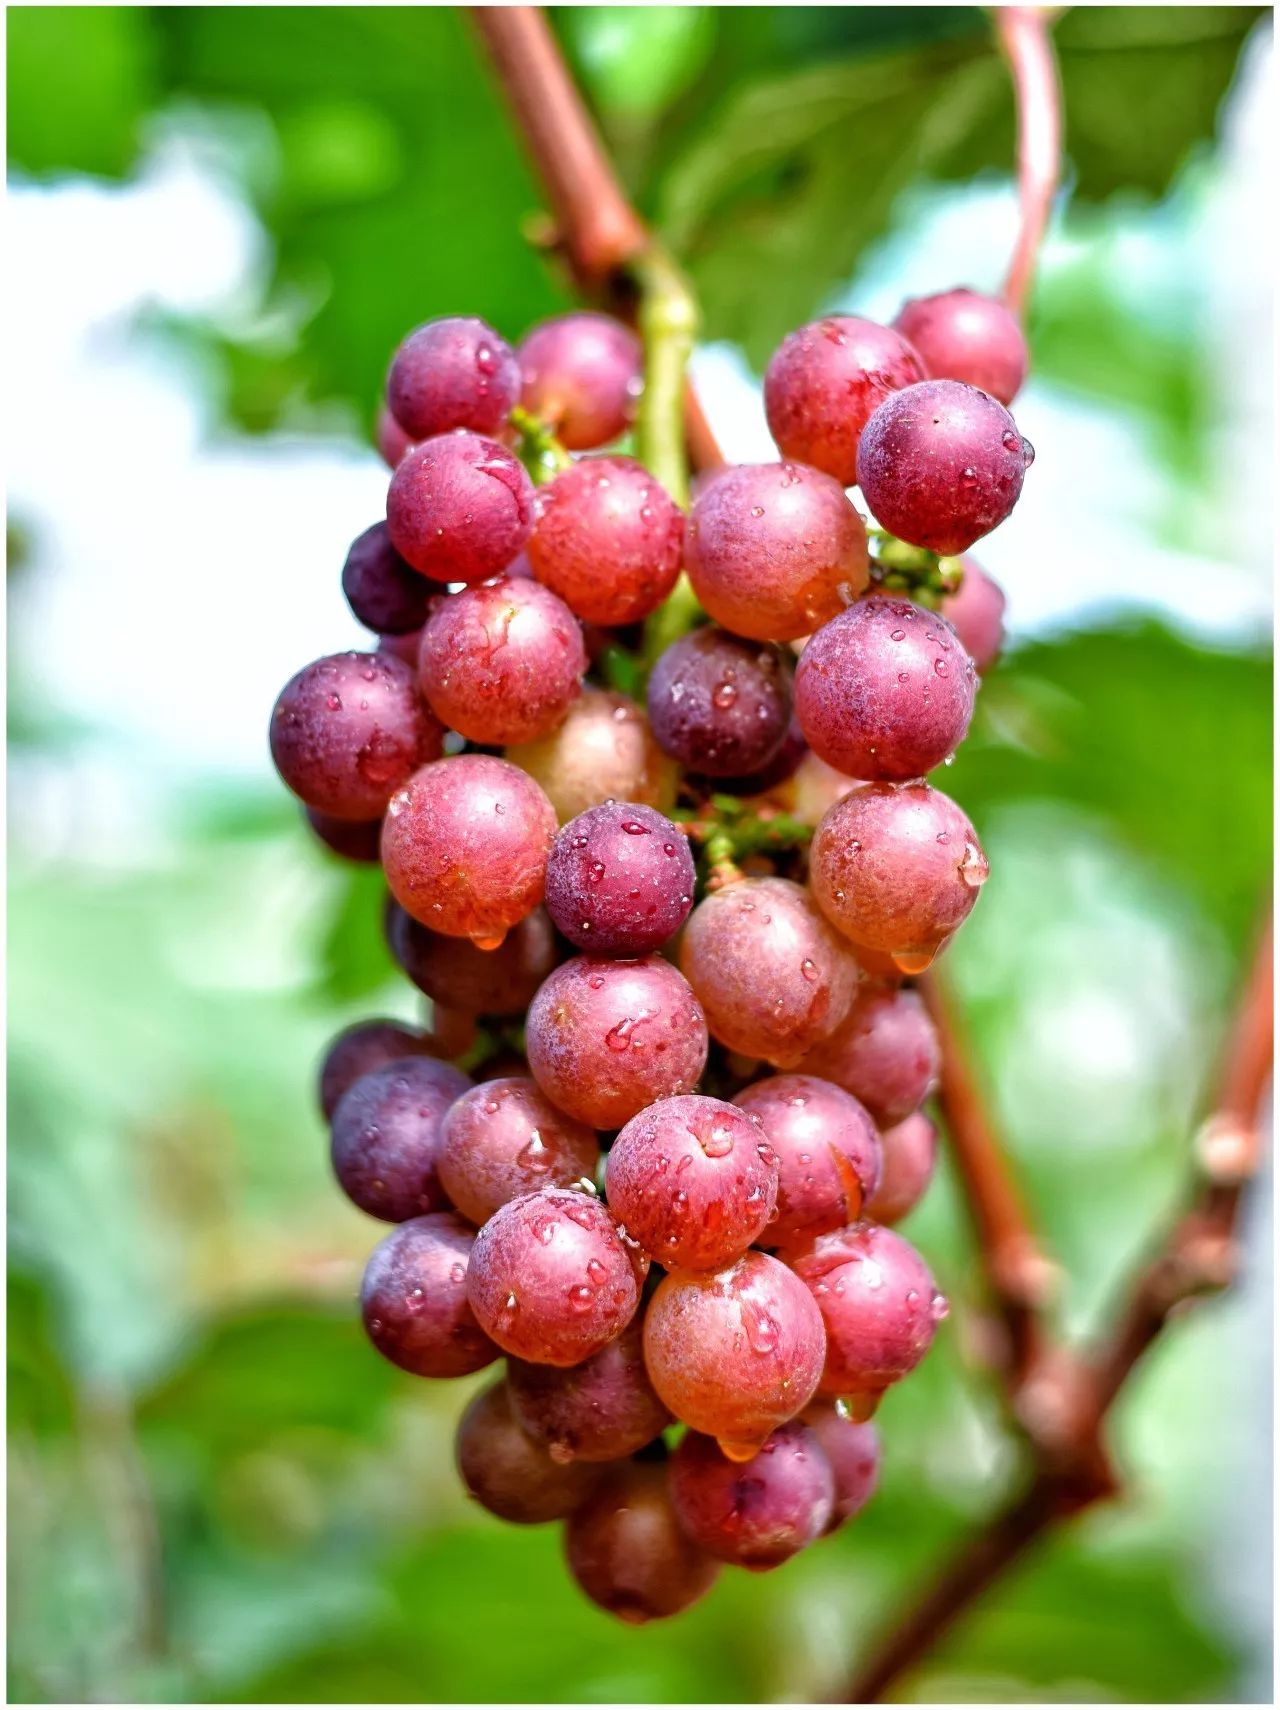 一串串硕大圆润的果实已经藏不住啦,紫红,深红色的葡萄沾着露水,分外